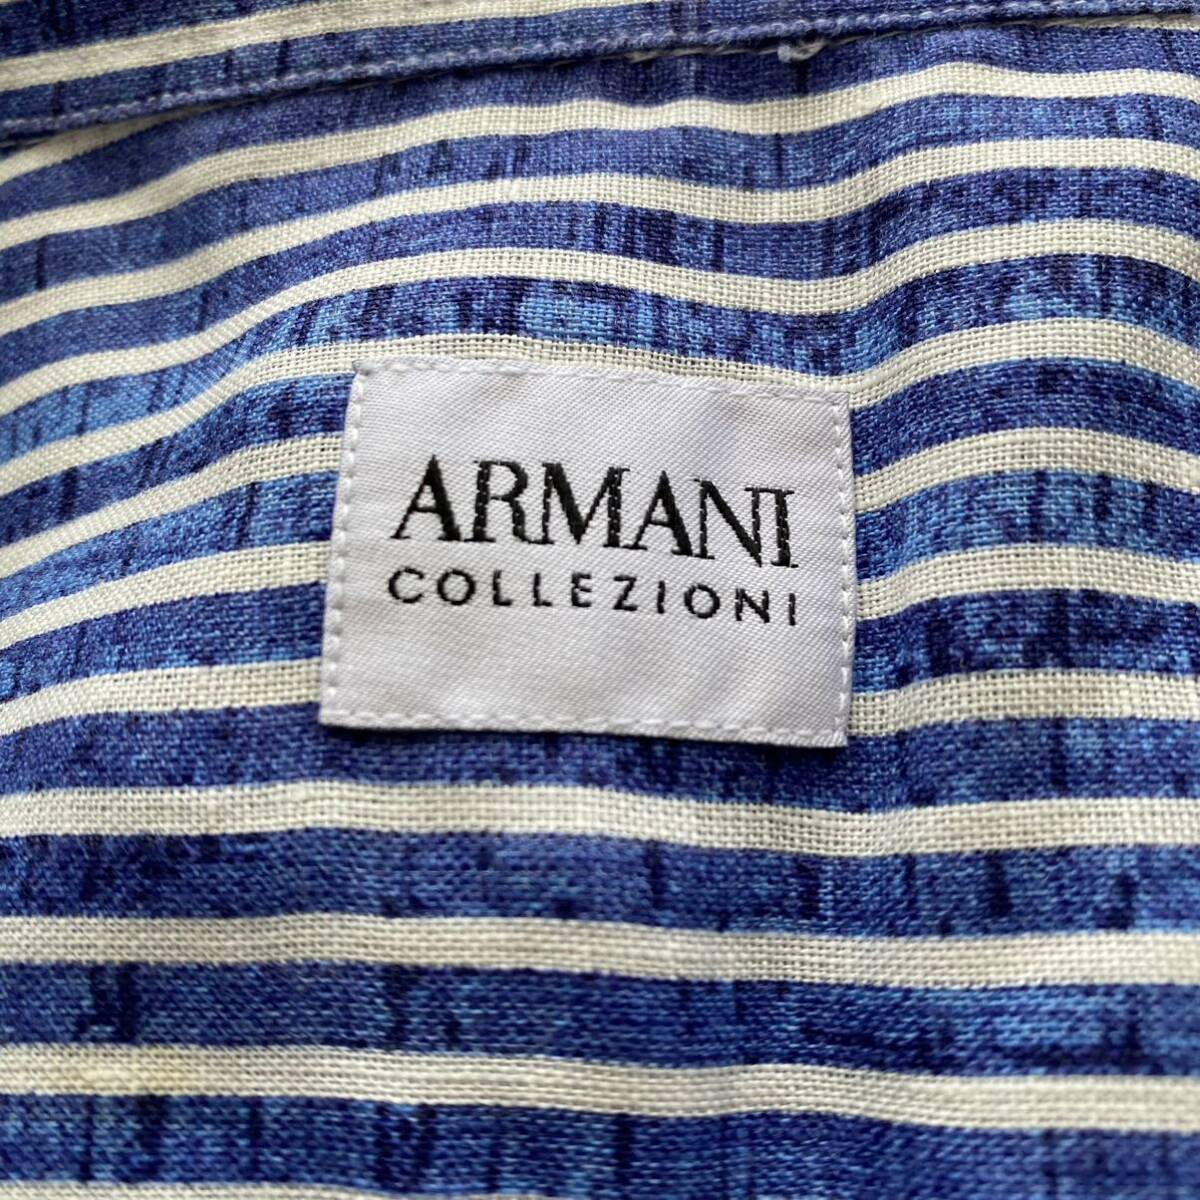  не использовался класс /L размер /ARMANI COLLEZIONI Armani ko let's .-nilinen100% окантовка рубашка с длинным рукавом голубой белый синий белый ощущение роскоши мужской 